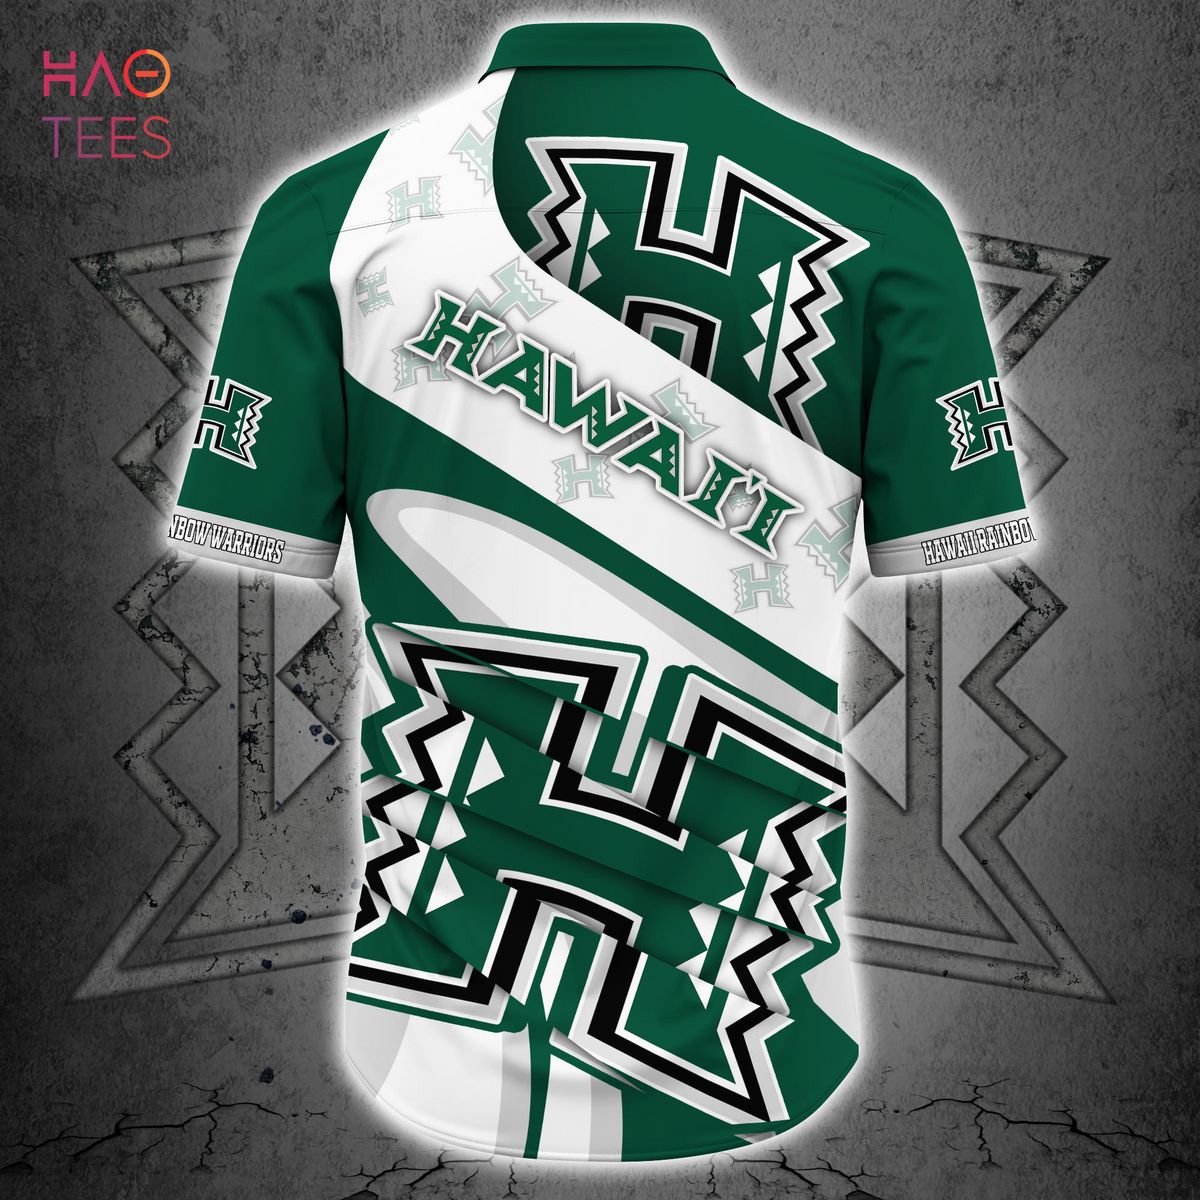 [TRENDING] Hawaii Rainbow Warriors Hawaiian Shirt For New Season